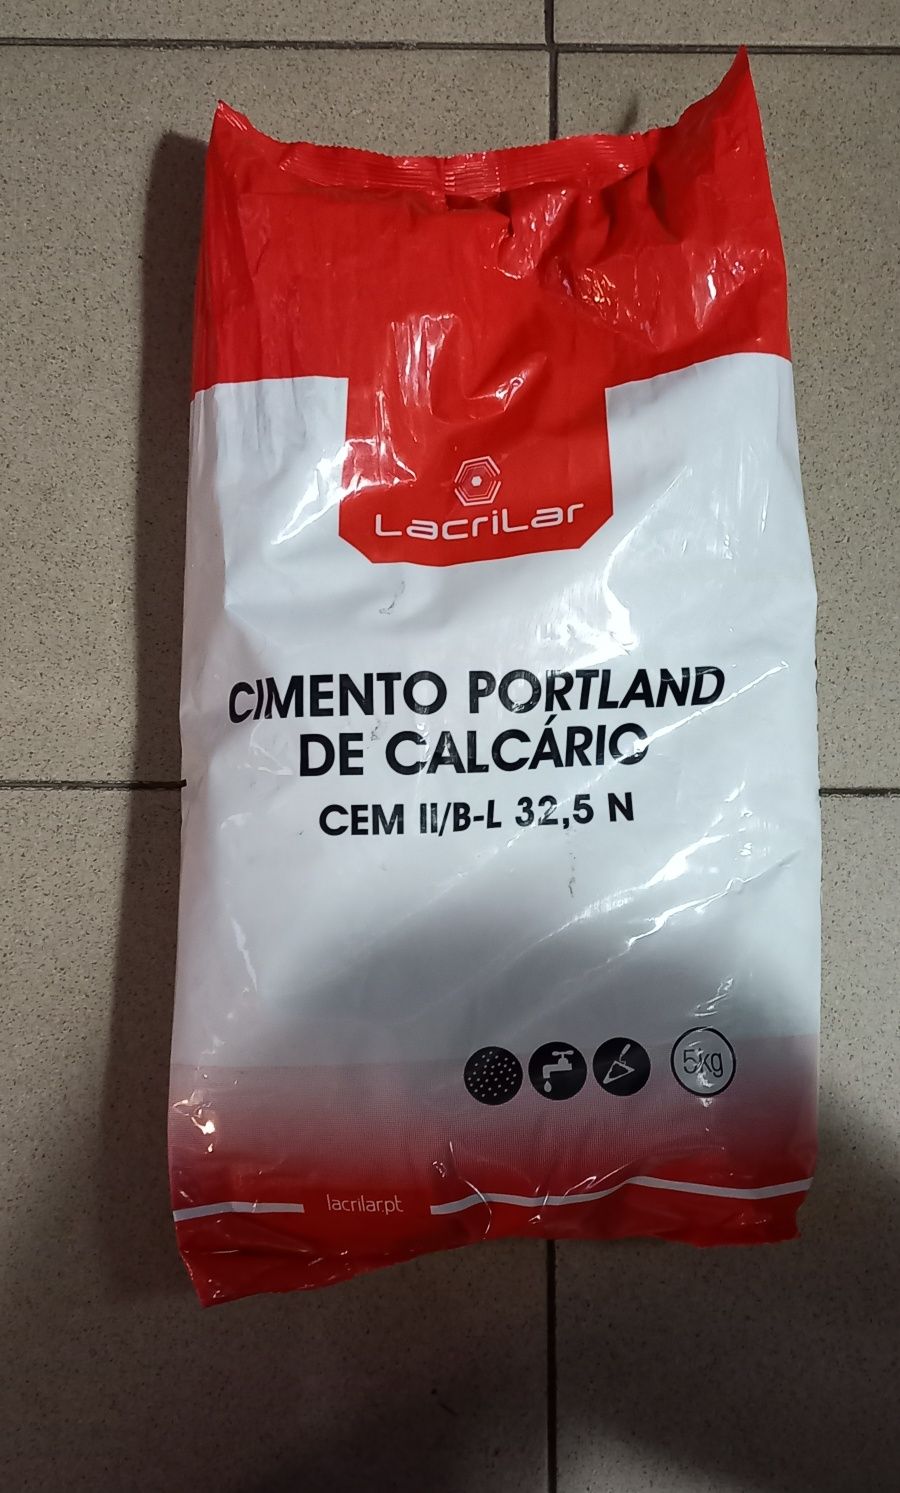 Saco de Cimento Portland de Calcário 

CEM II/B-L 32,5 N - 5kg

Marca: